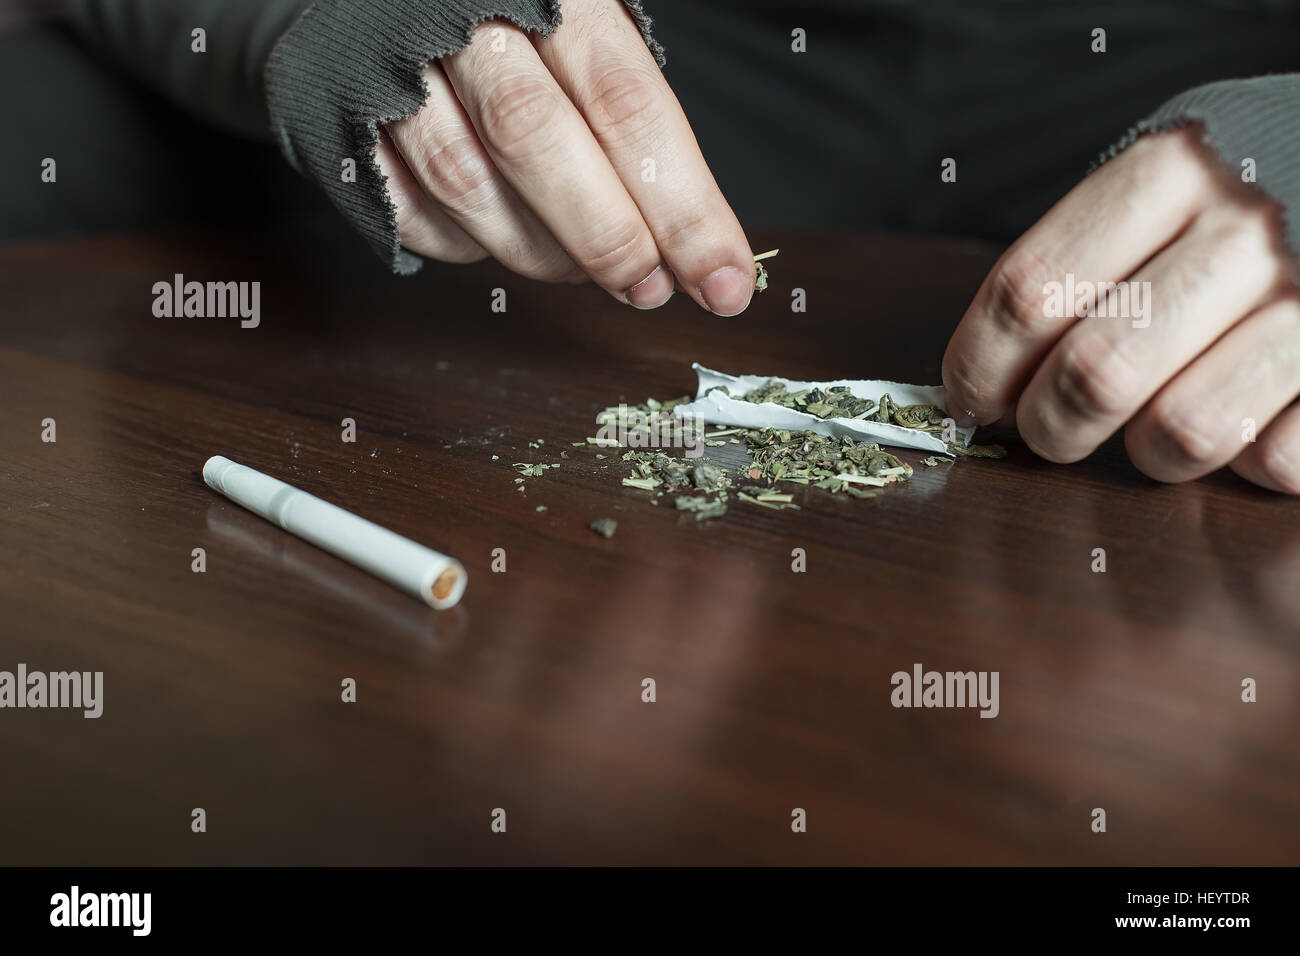 La marijuana fait mains Addict jamb libre. Banque D'Images